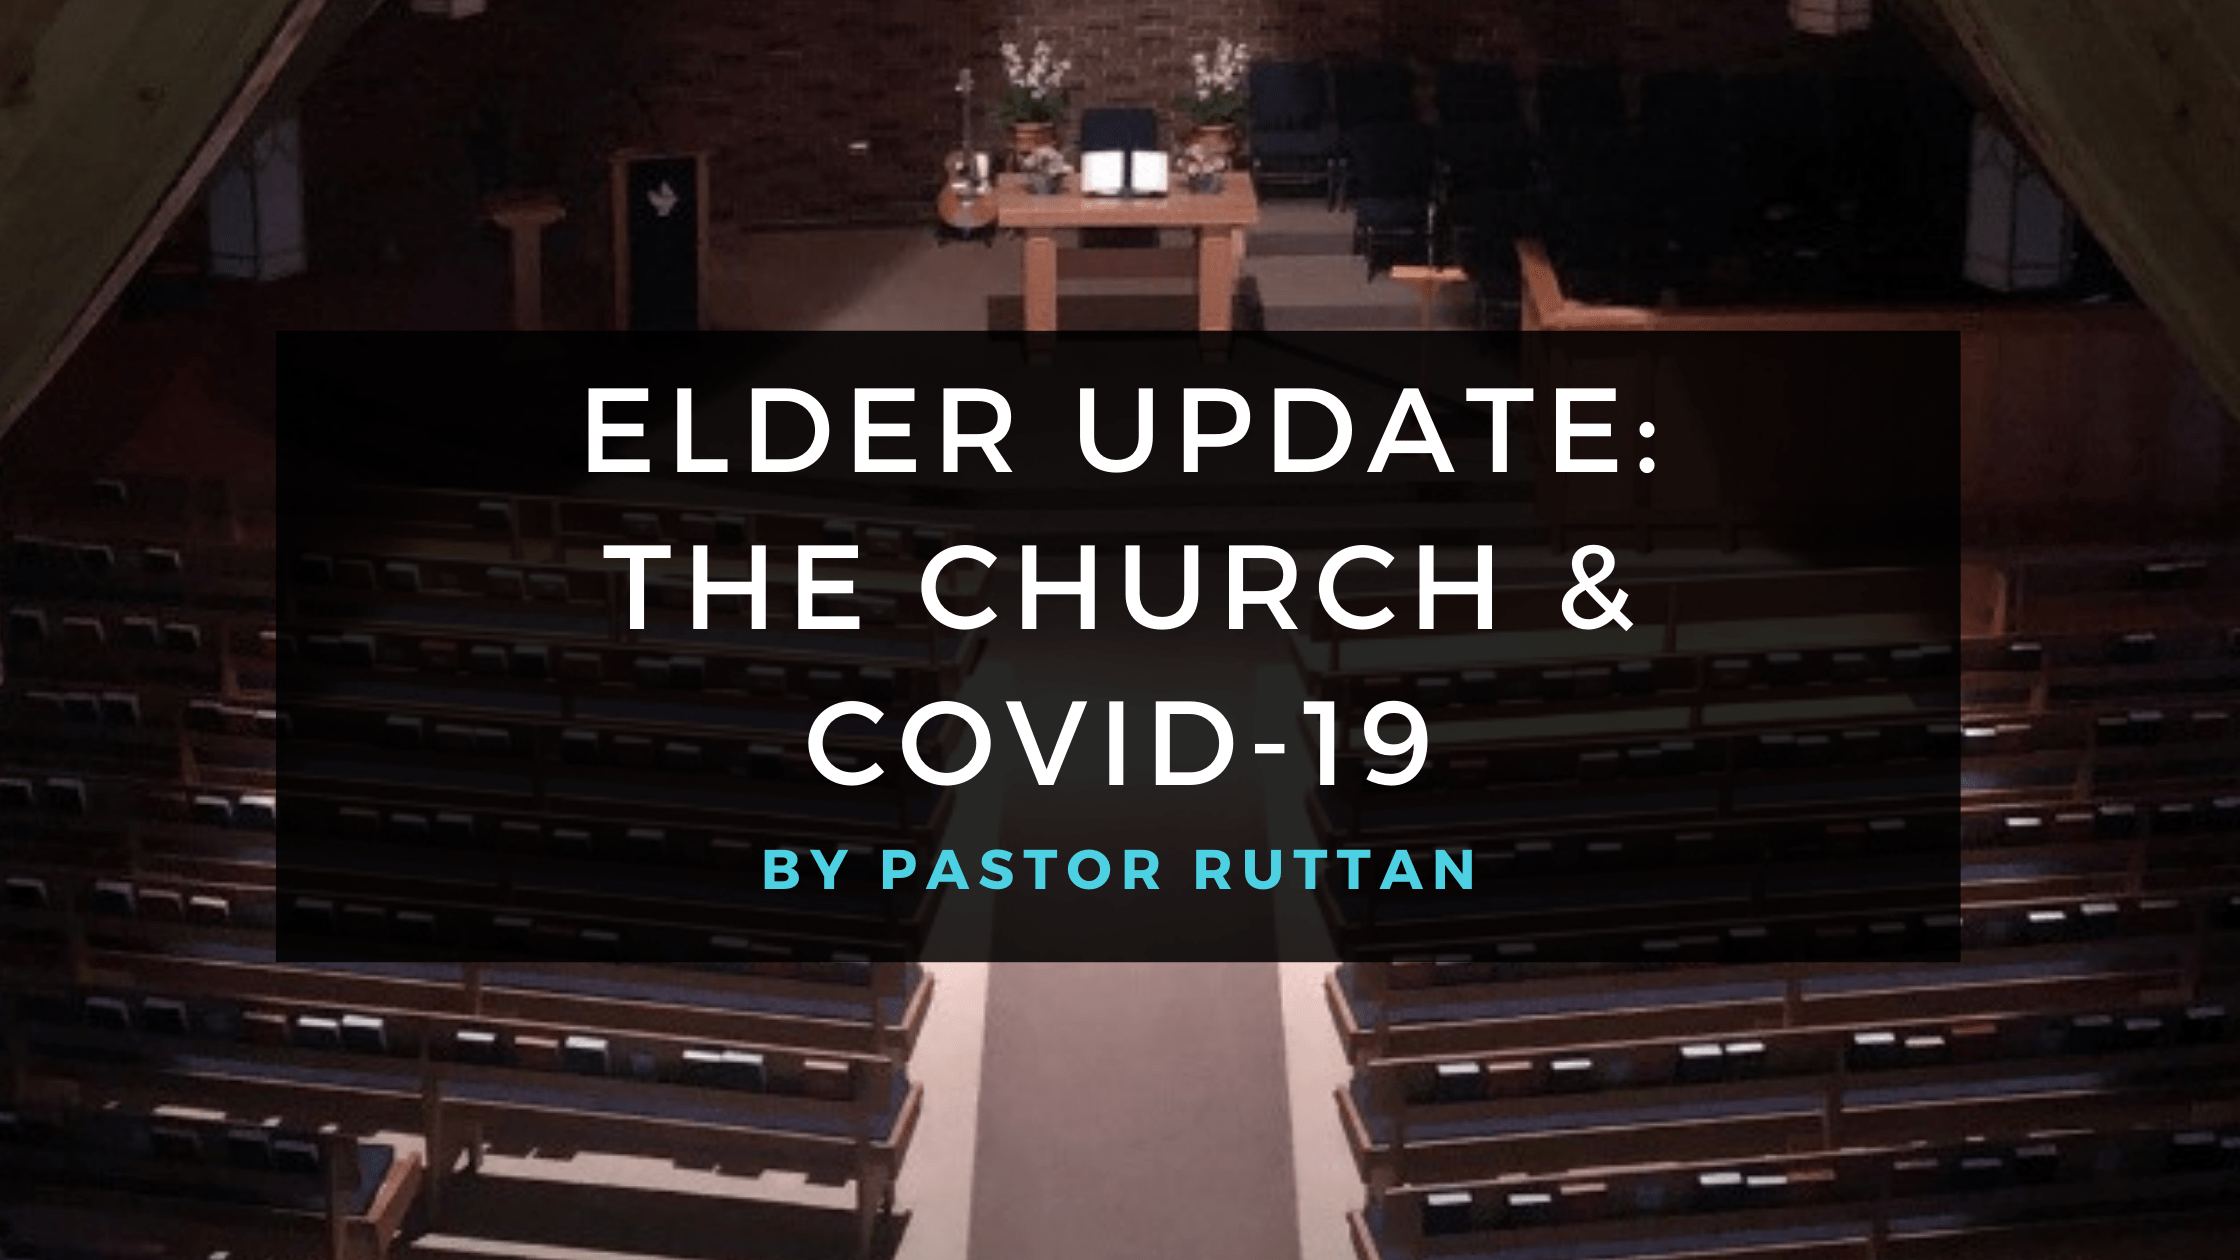 Elder Update: The Church & Covid-19